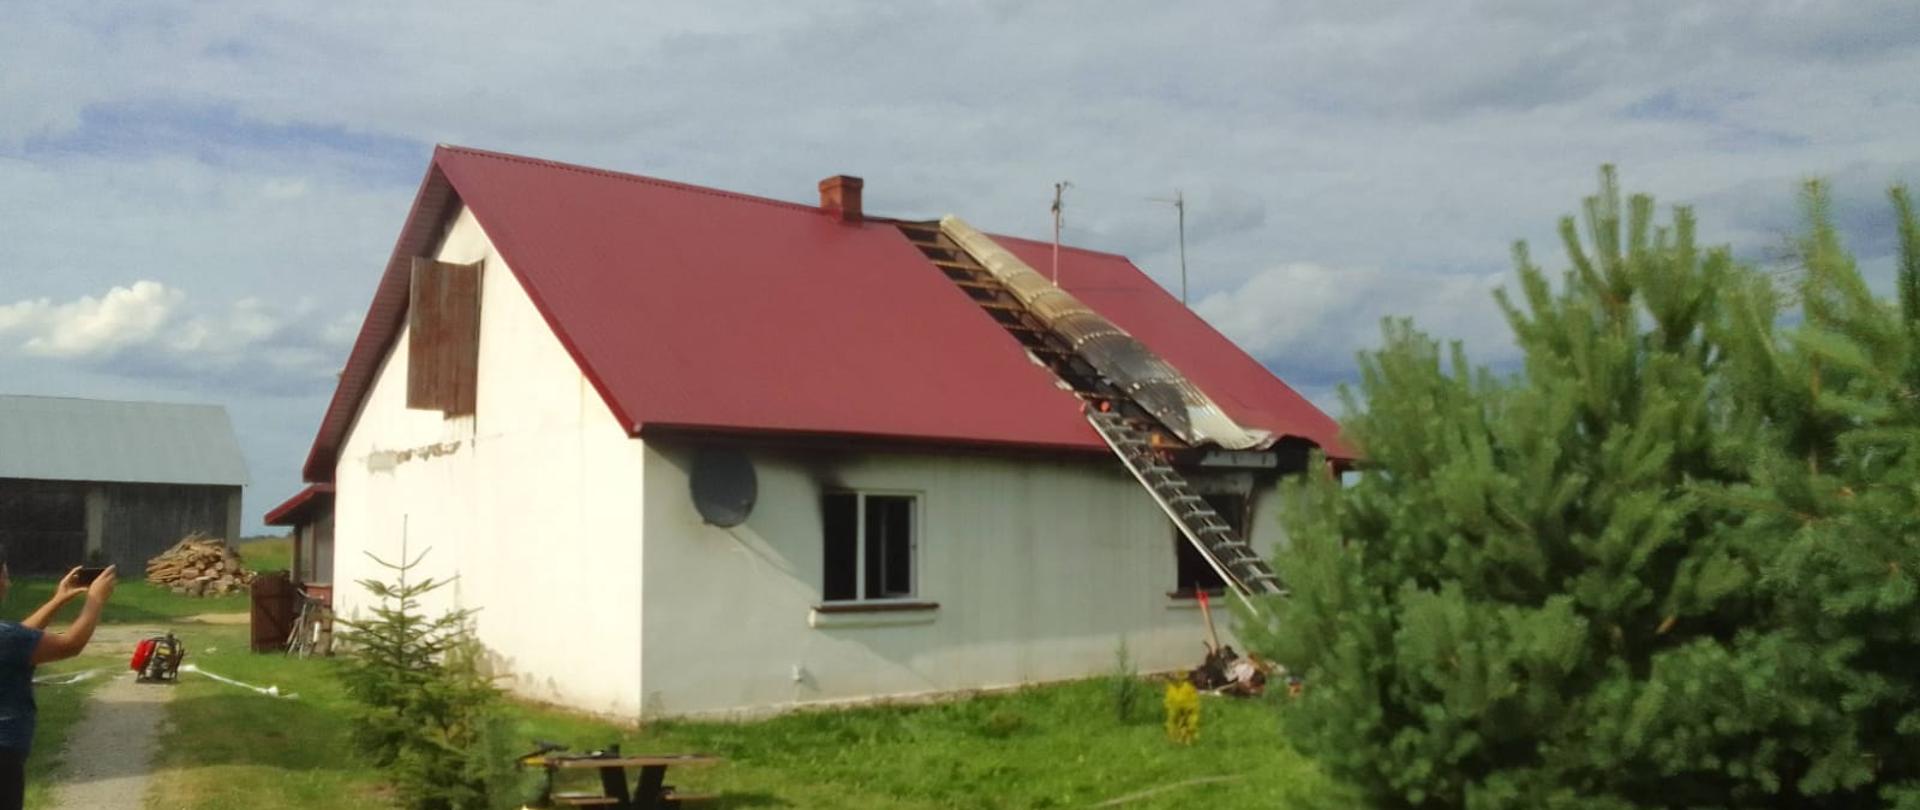 Zdjęcie przedstawia dom jednorodzinny parterowy z czerwonym dachem. Widoczne są ślady pożaru takie jak usunięta blacha z poszycia dachu oraz czarne ślady na otworami okiennymi